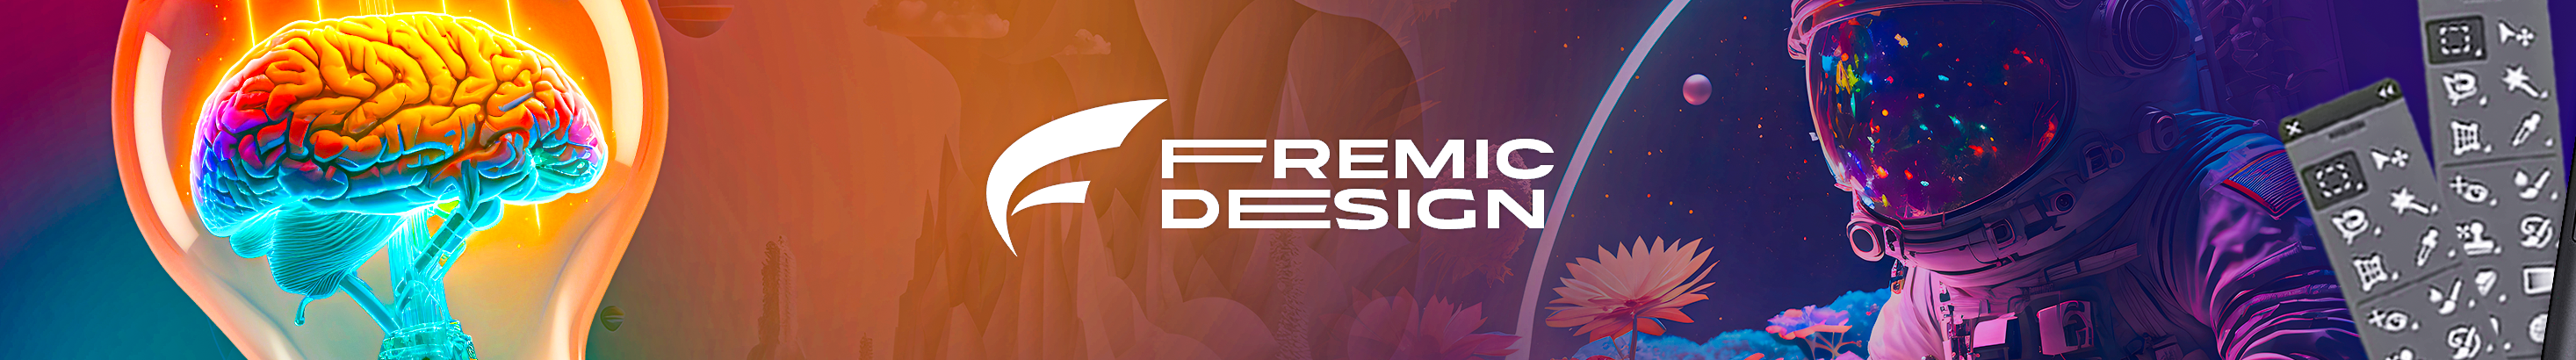 Profil-Banner von Fremic Design